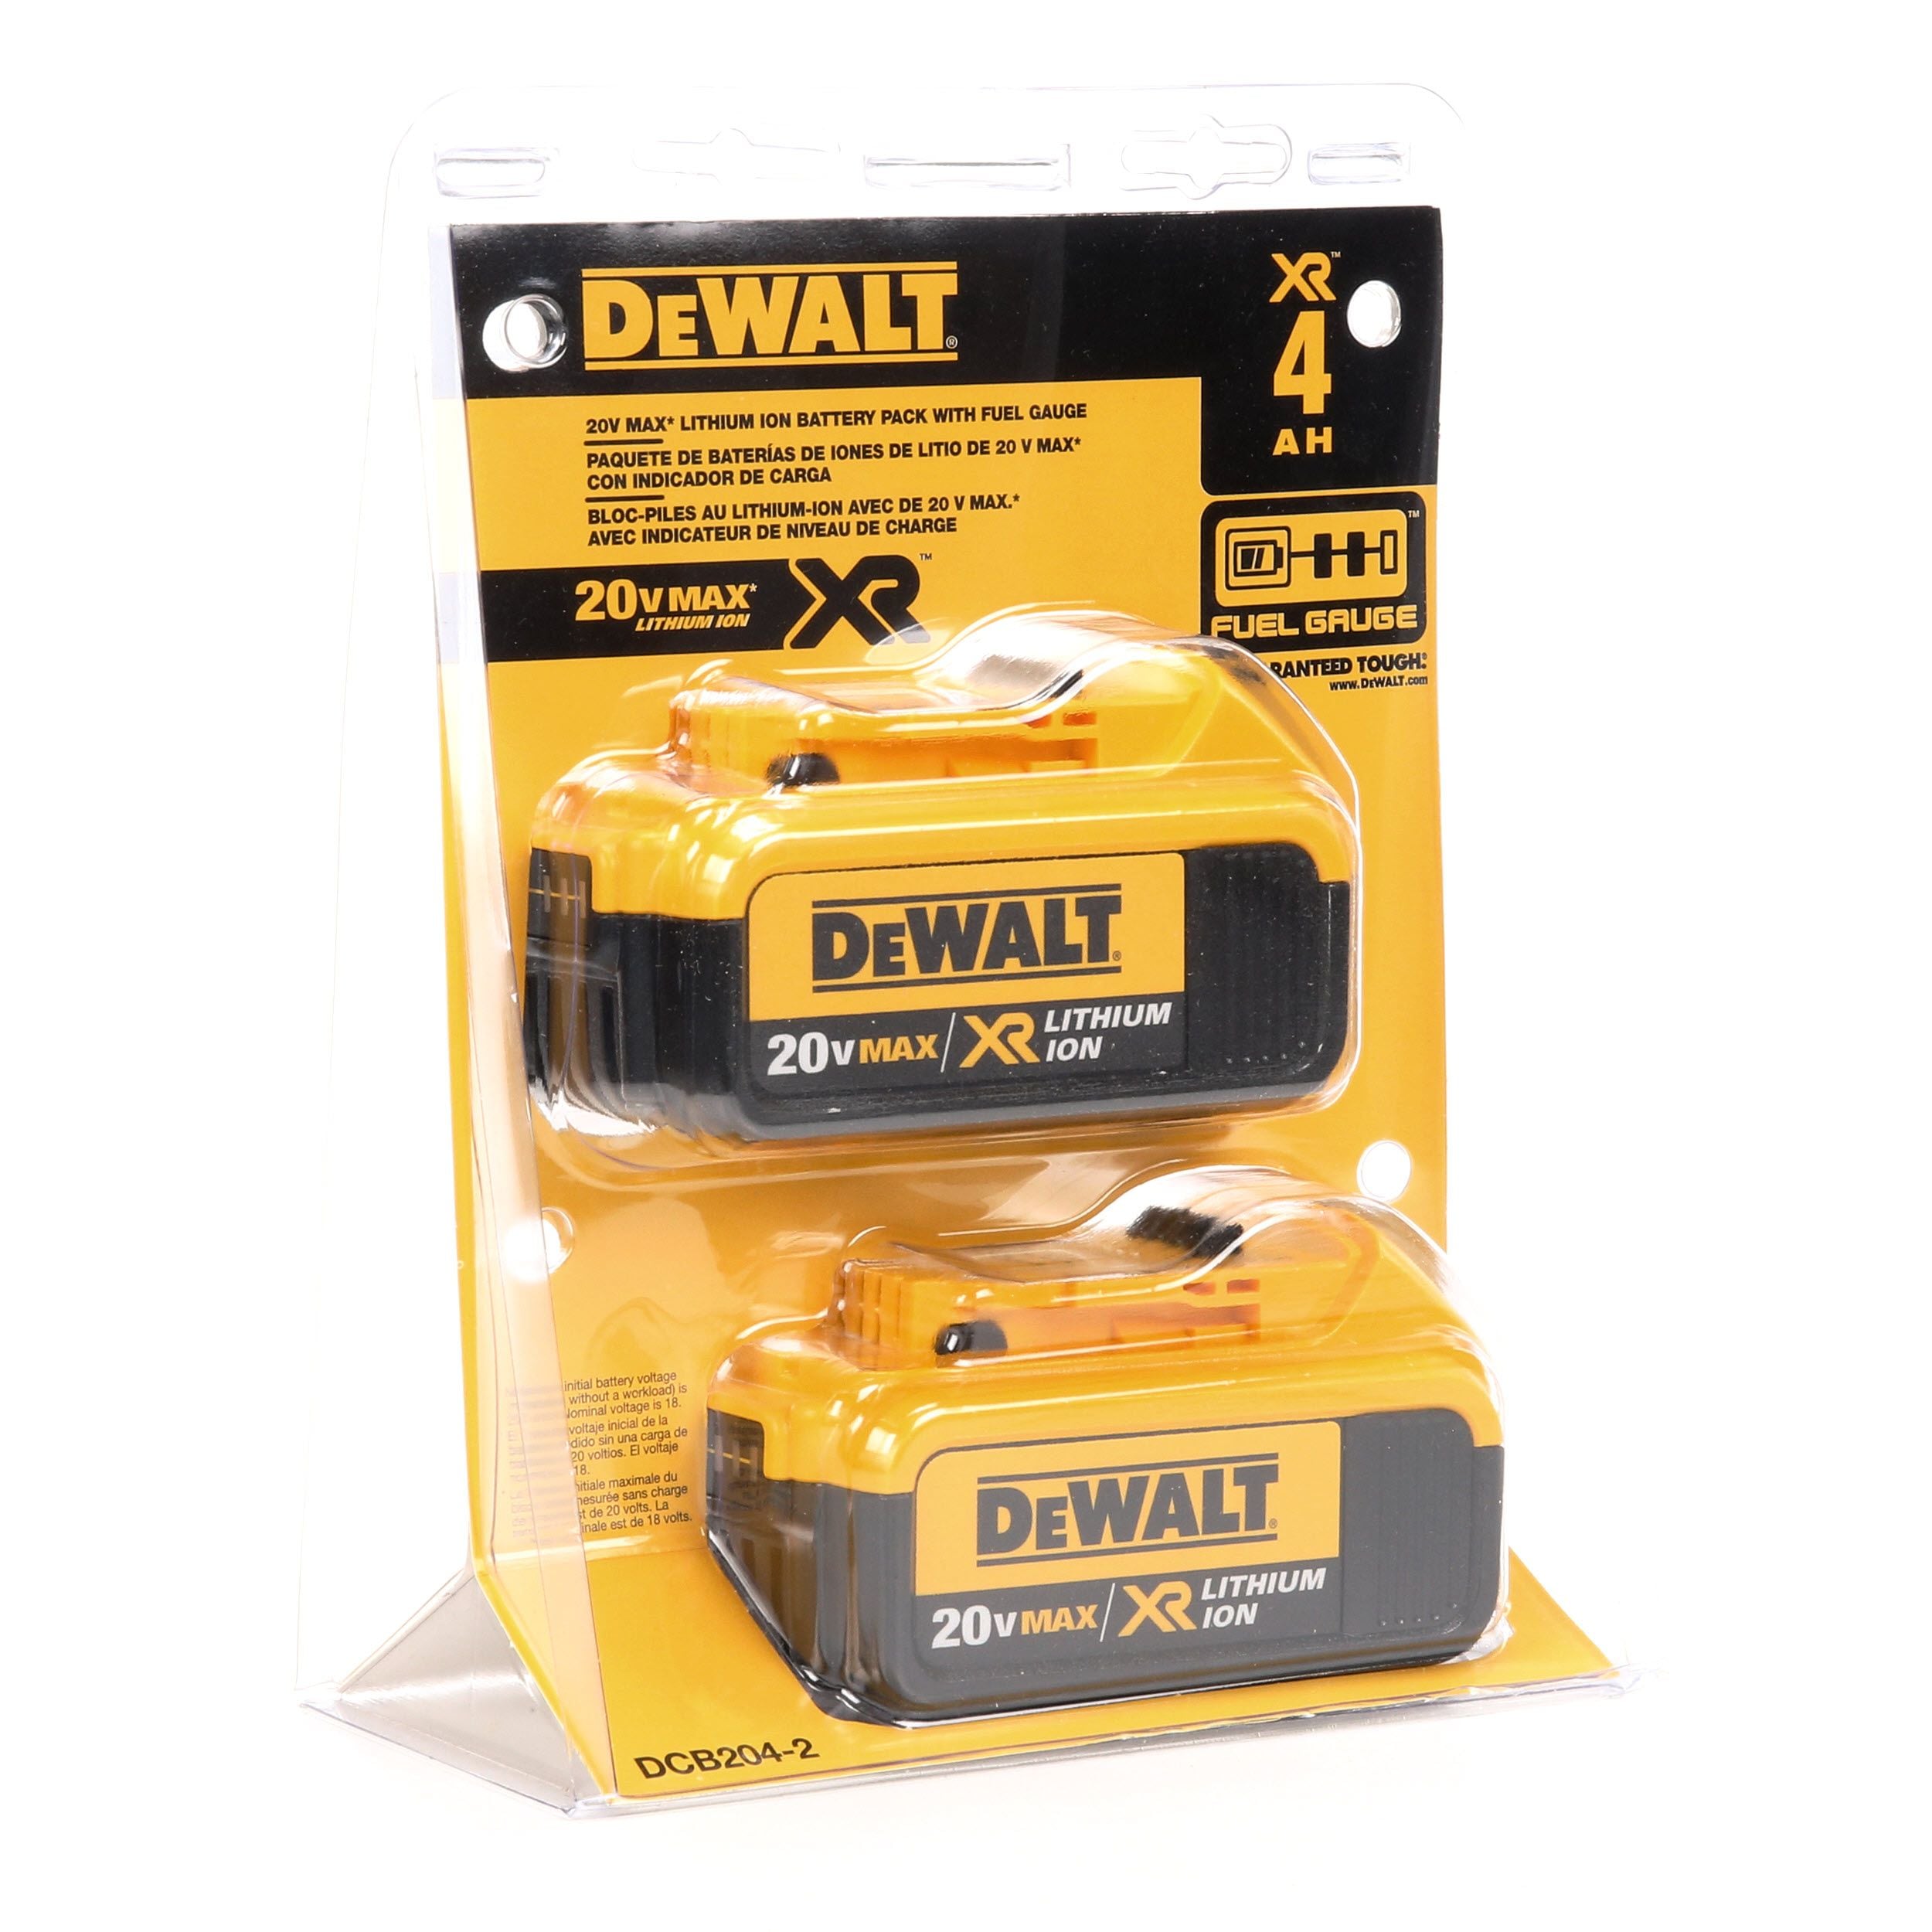 DEWALT DCV100M2 18v XR Compact Leaf Blower Dcv100 2 X 4ah Batteries Charger for sale online 